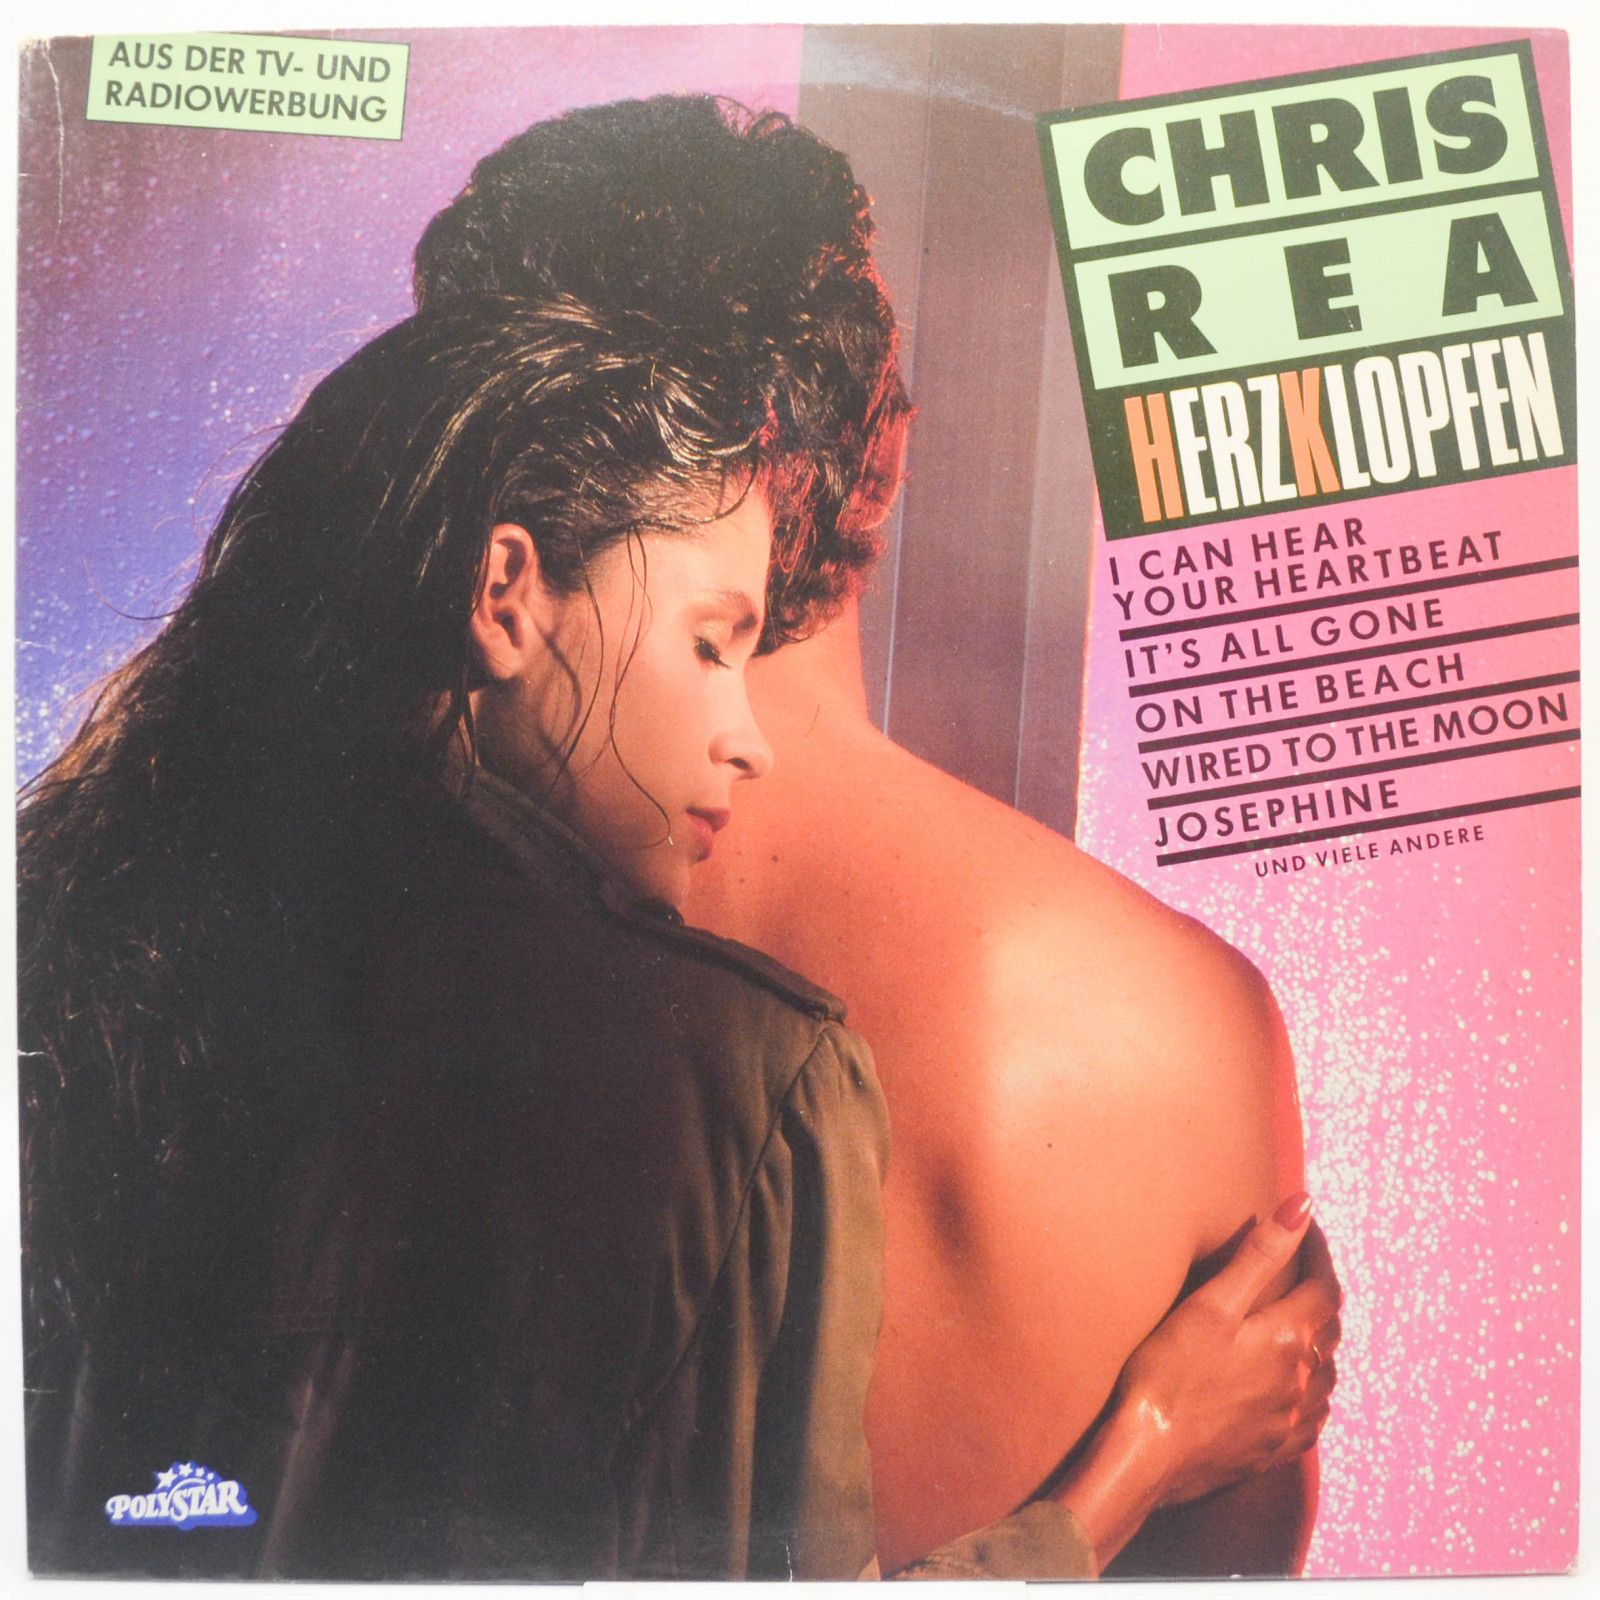 Chris Rea — Herzklopfen, 1986